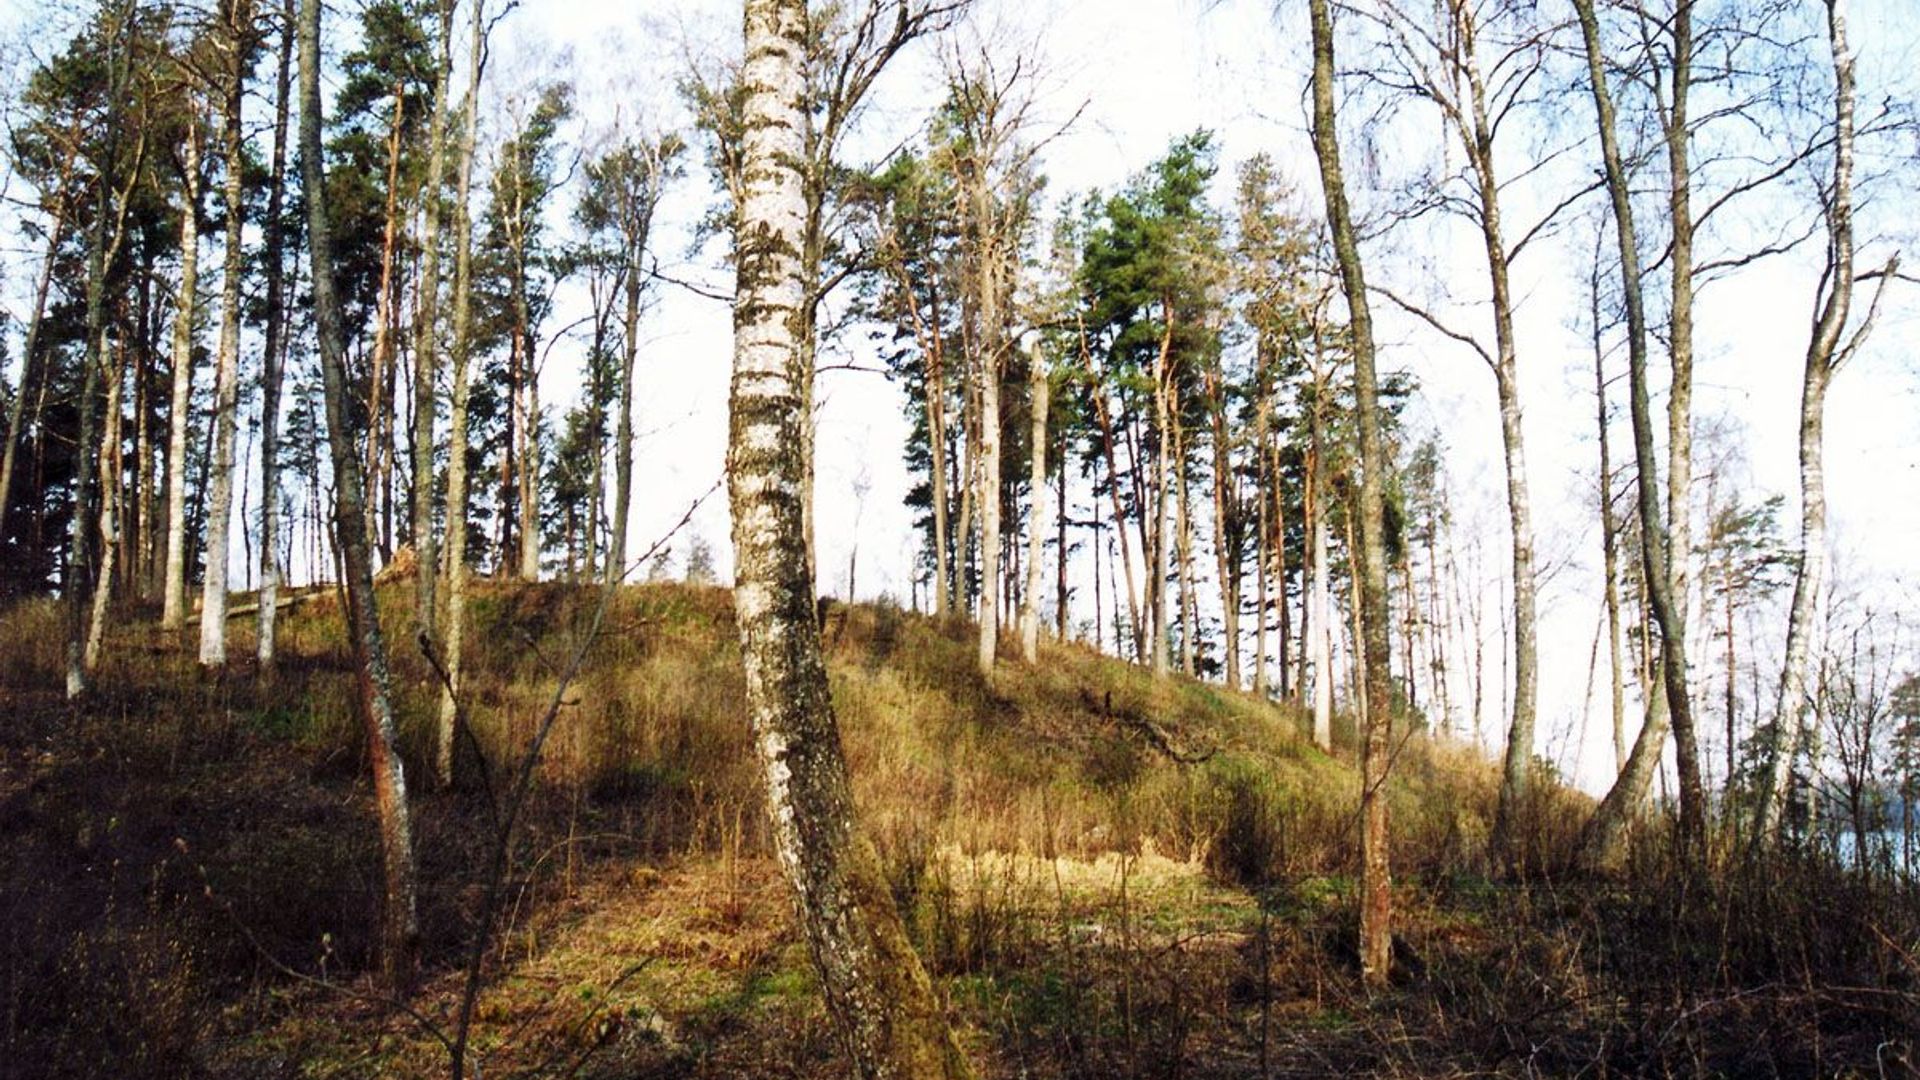 Zokoriai Mound